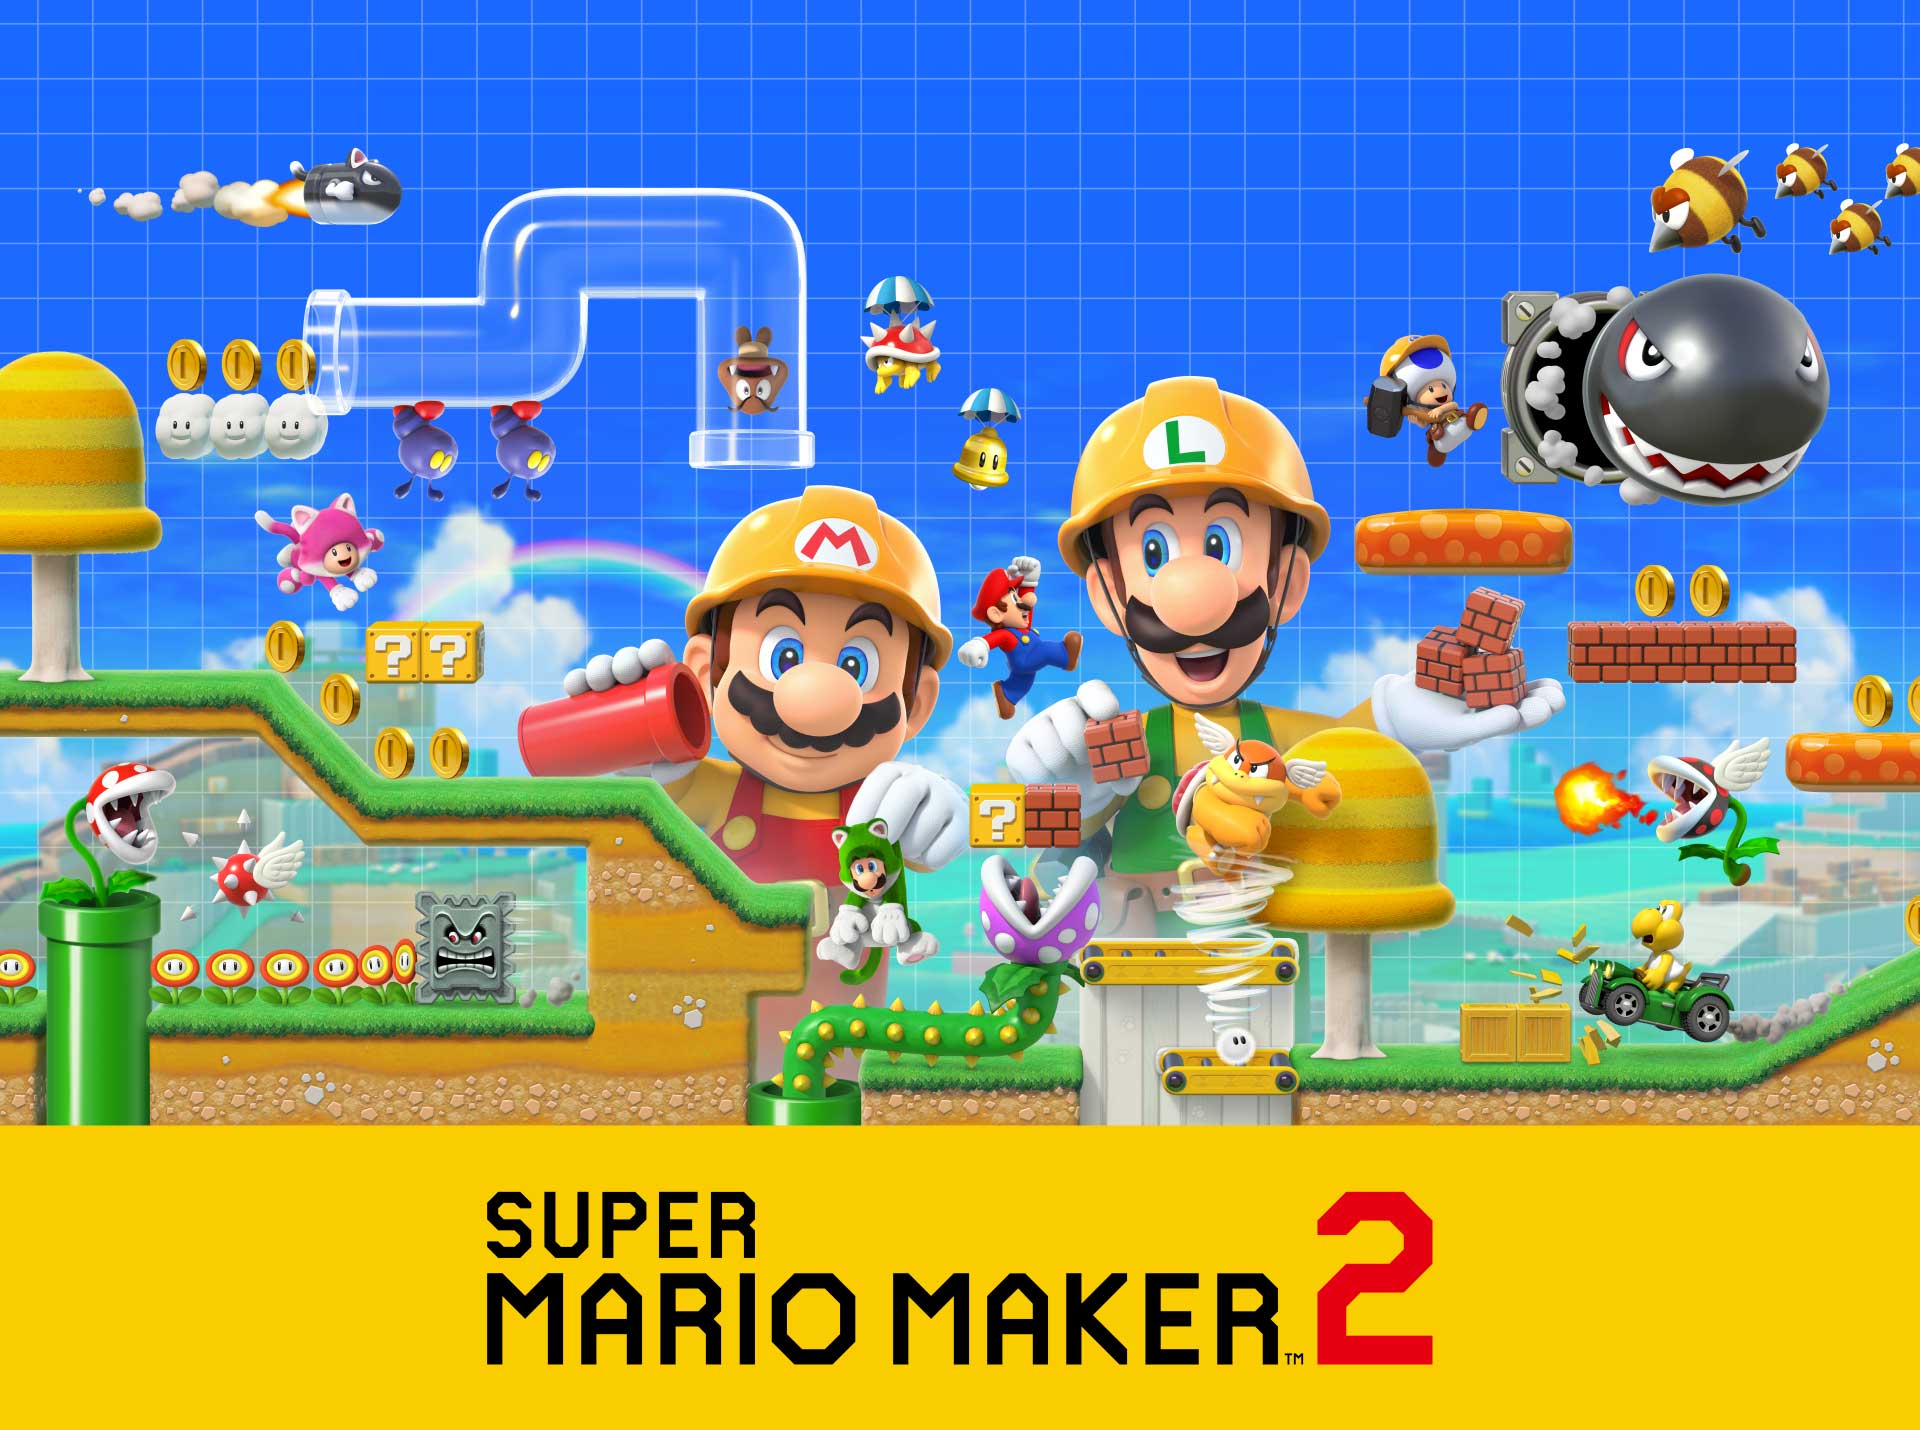 نقد و بررسی بازی سوپر ماریو میکر 2 - Super Mario Maker 2 + ویدیو بررسی